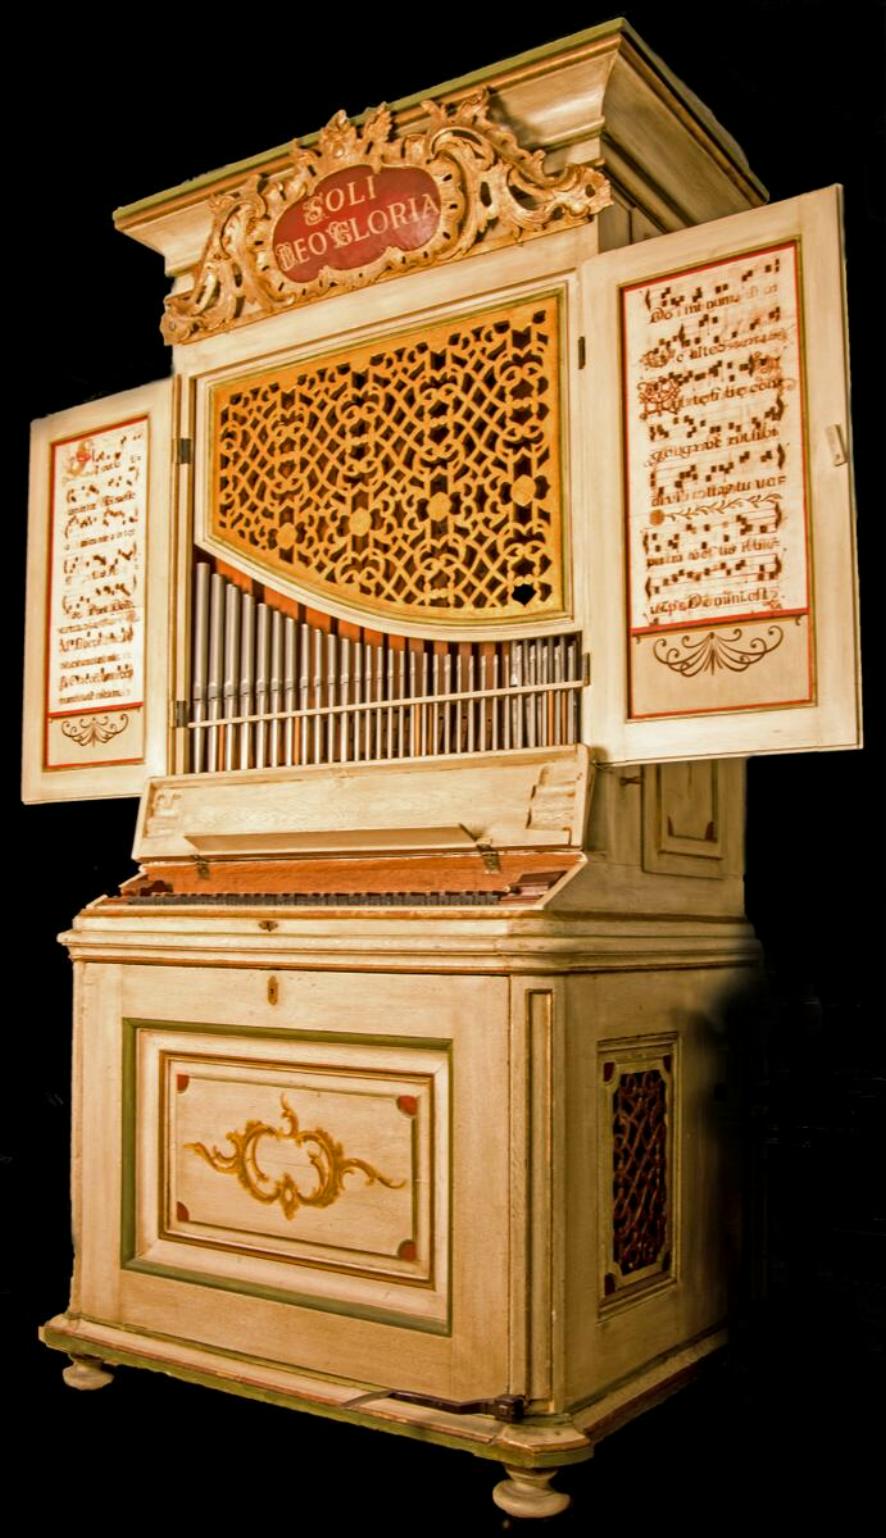 Positiv Organ from 1740